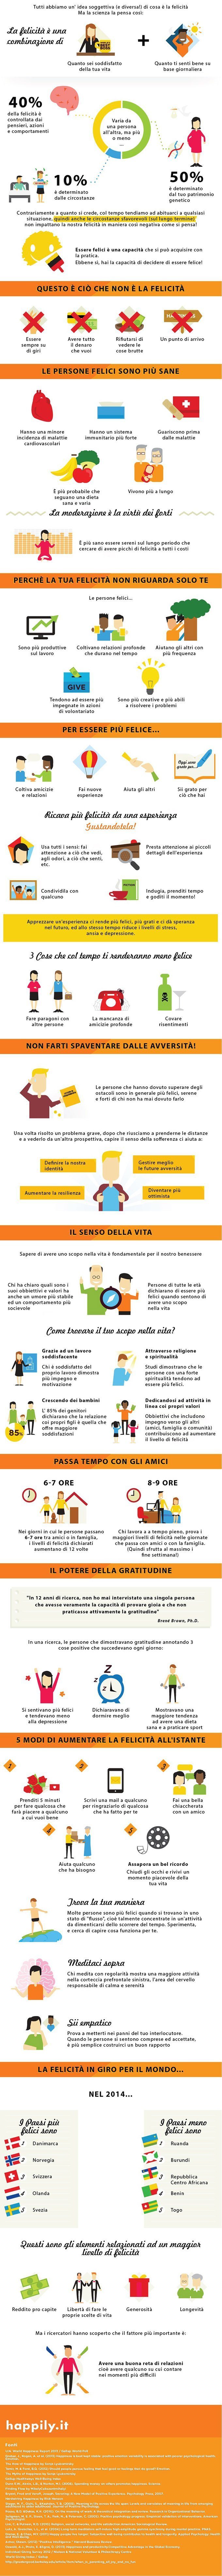 La Scienza della Felicità - Infografica - FONTE: Happily.it